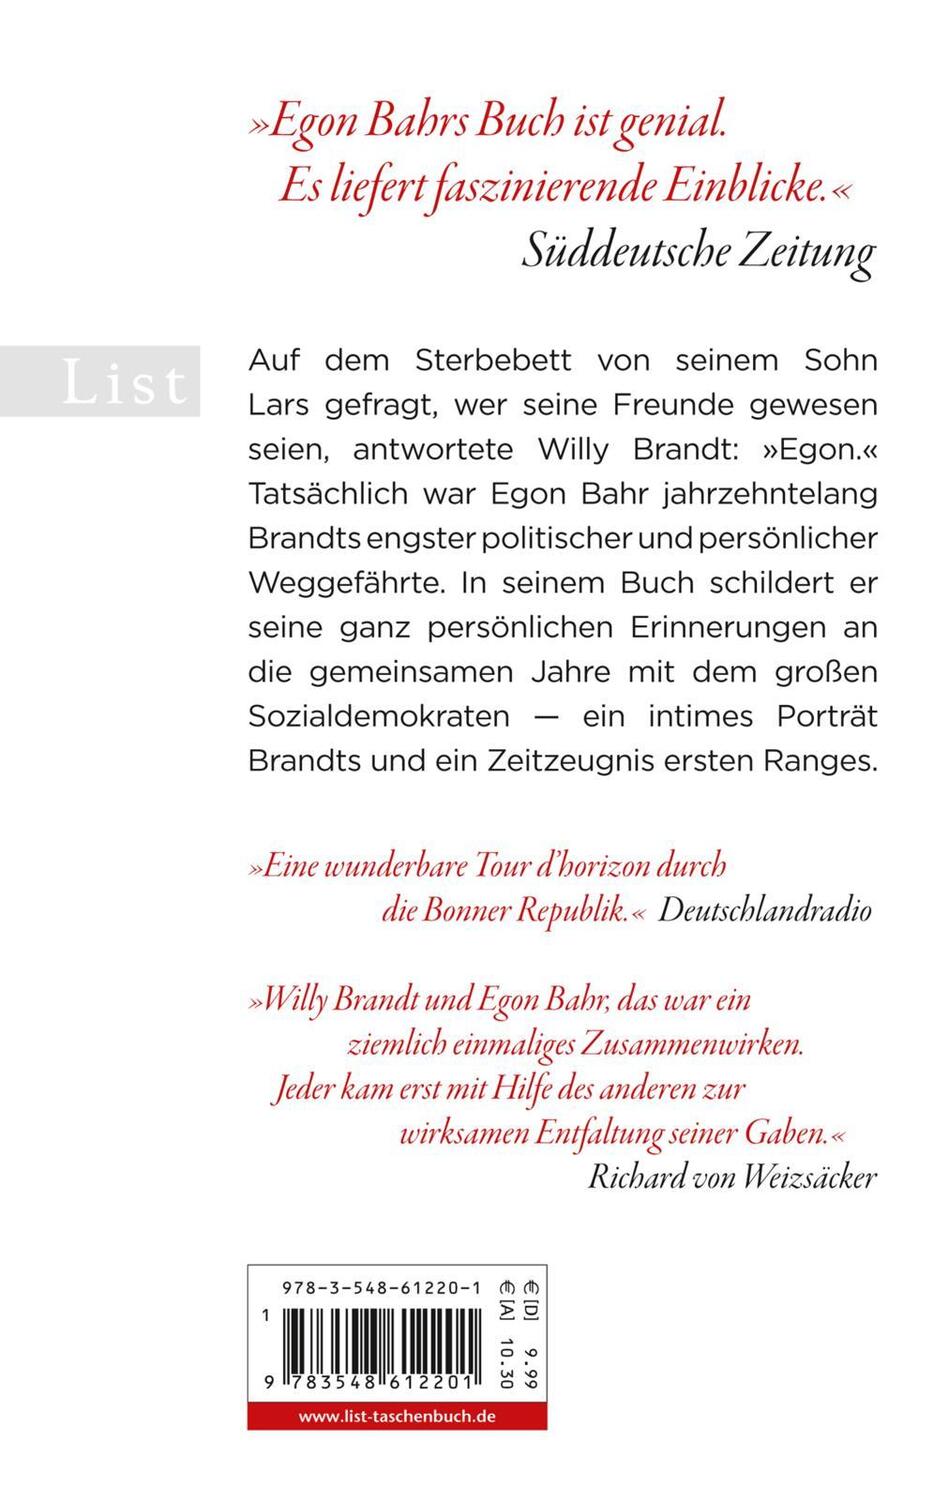 Rückseite: 9783548612201 | »Das musst du erzählen« | Erinnerungen an Willy Brandt | Egon Bahr